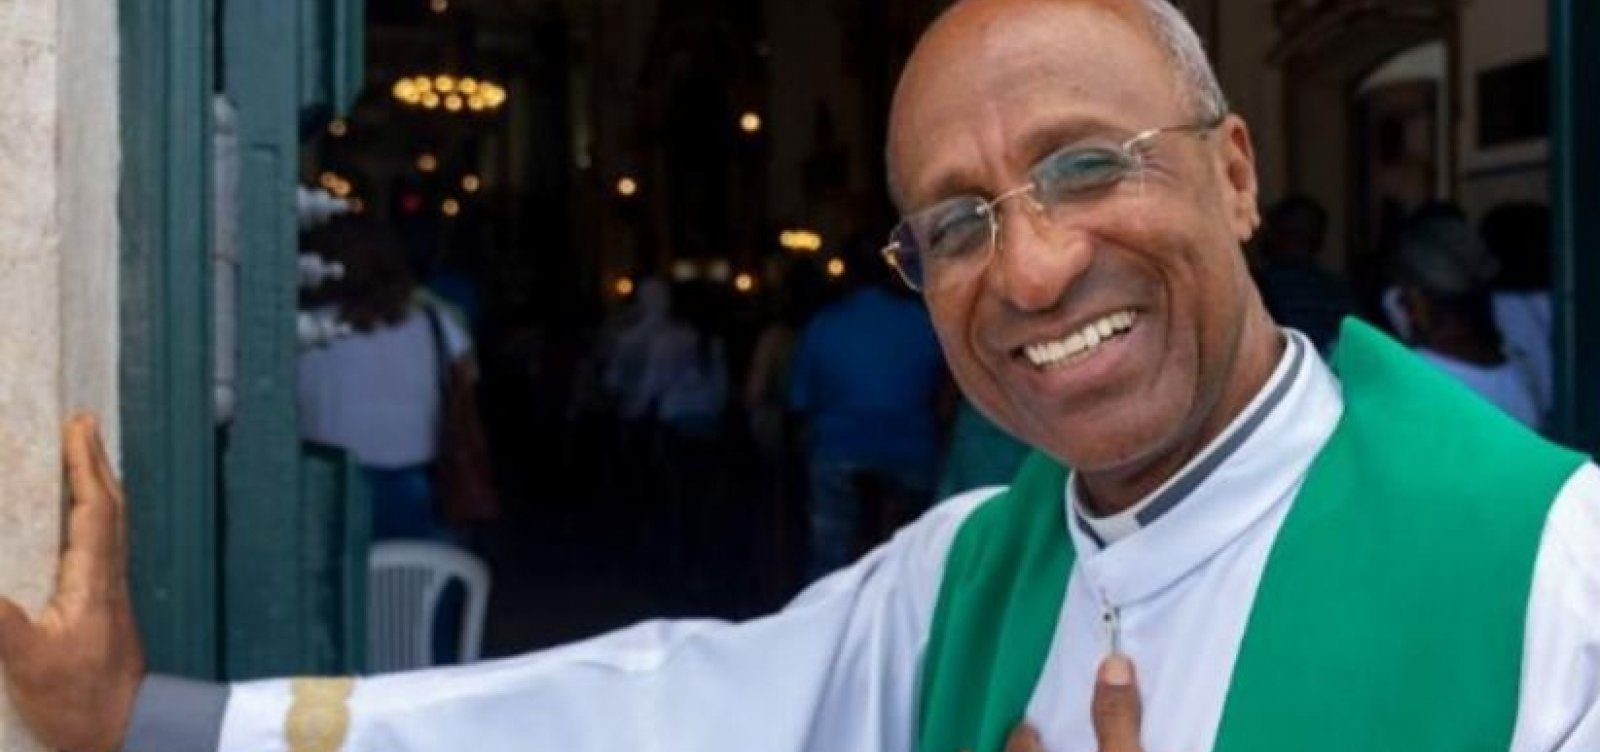 Reitor da Basílica do Bonfim diz estar sendo perseguido por irmandade da igreja: “Só desejo continuar trabalhando"